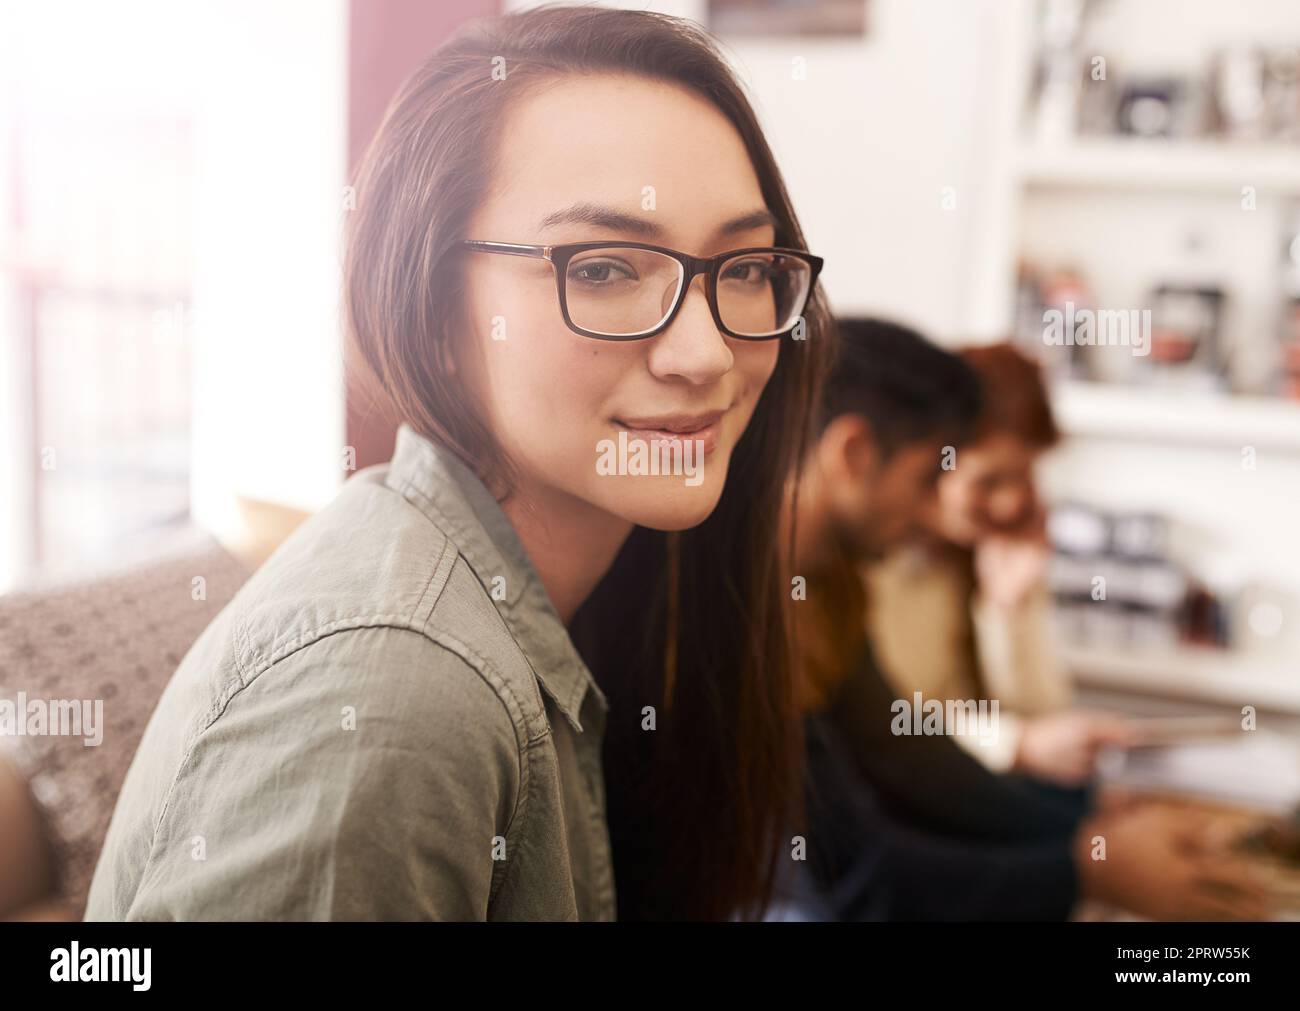 Tutti abbiamo bisogno di un po' di tempo. Ritratto di una giovane donna in una caffetteria con i suoi amici seduti sullo sfondo. Foto Stock